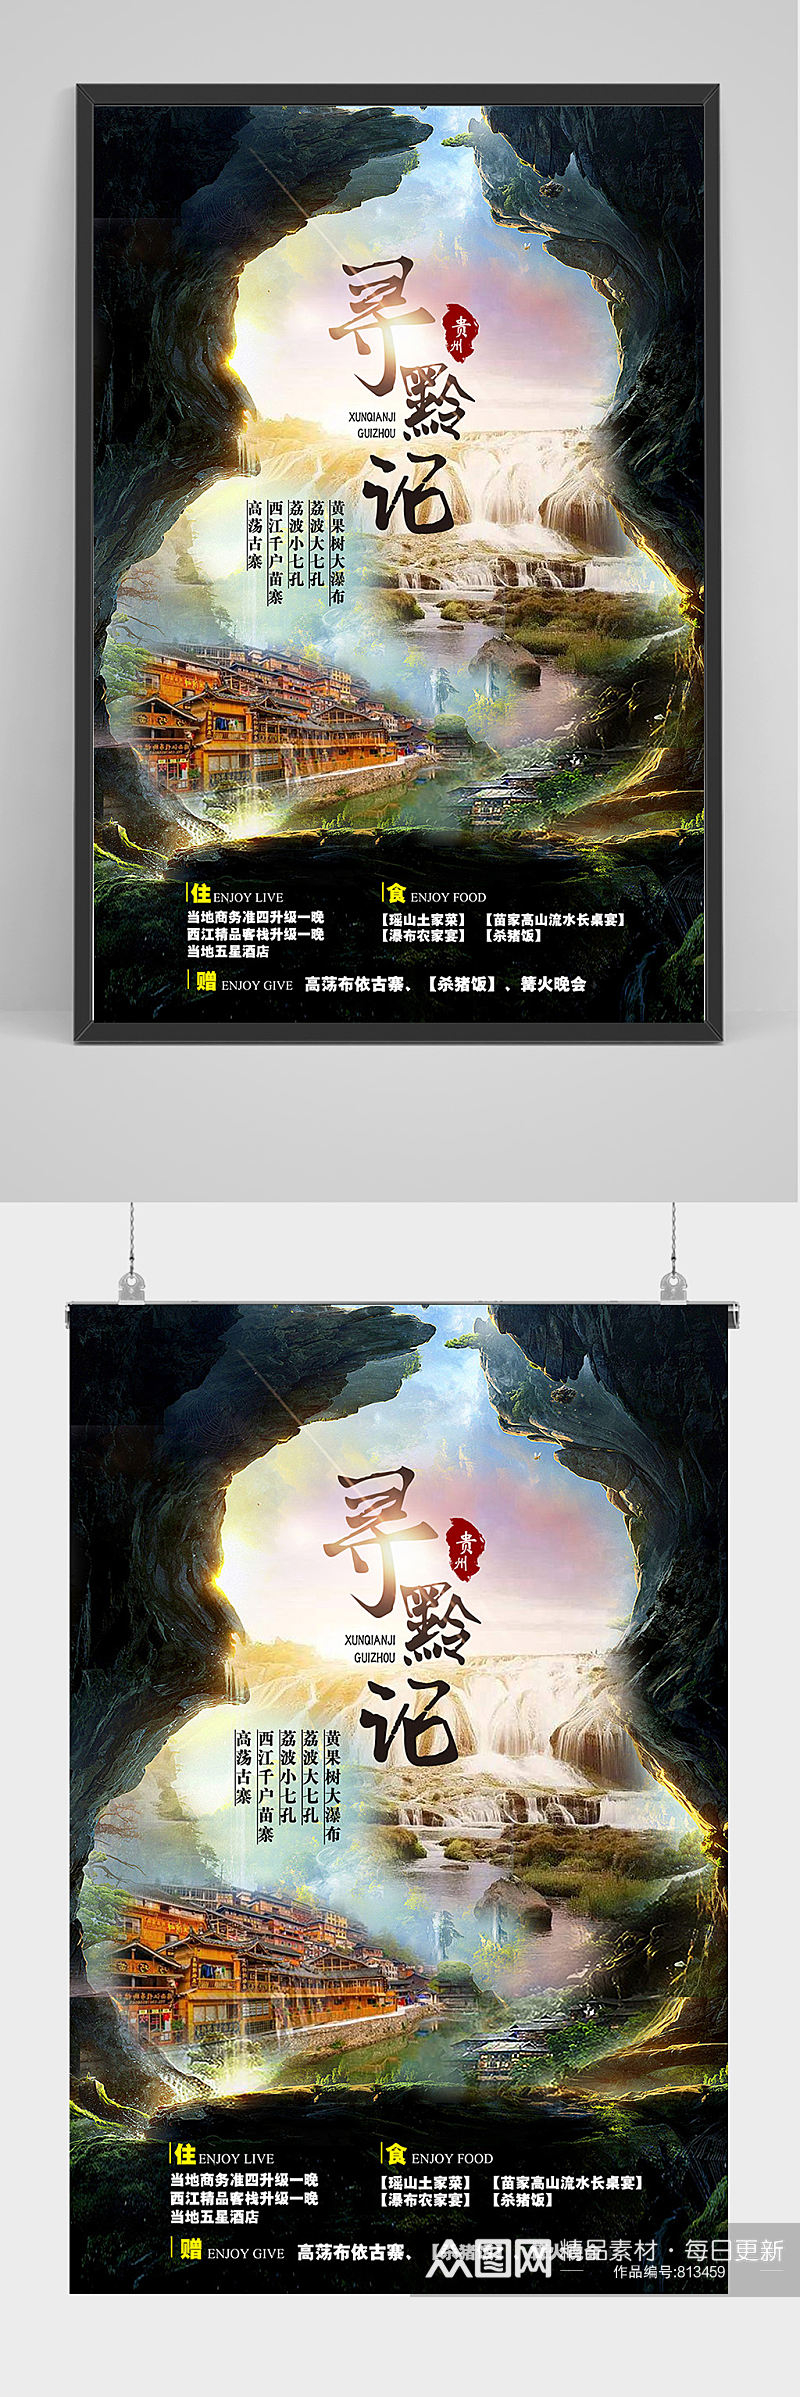 贵州旅游海报设计素材